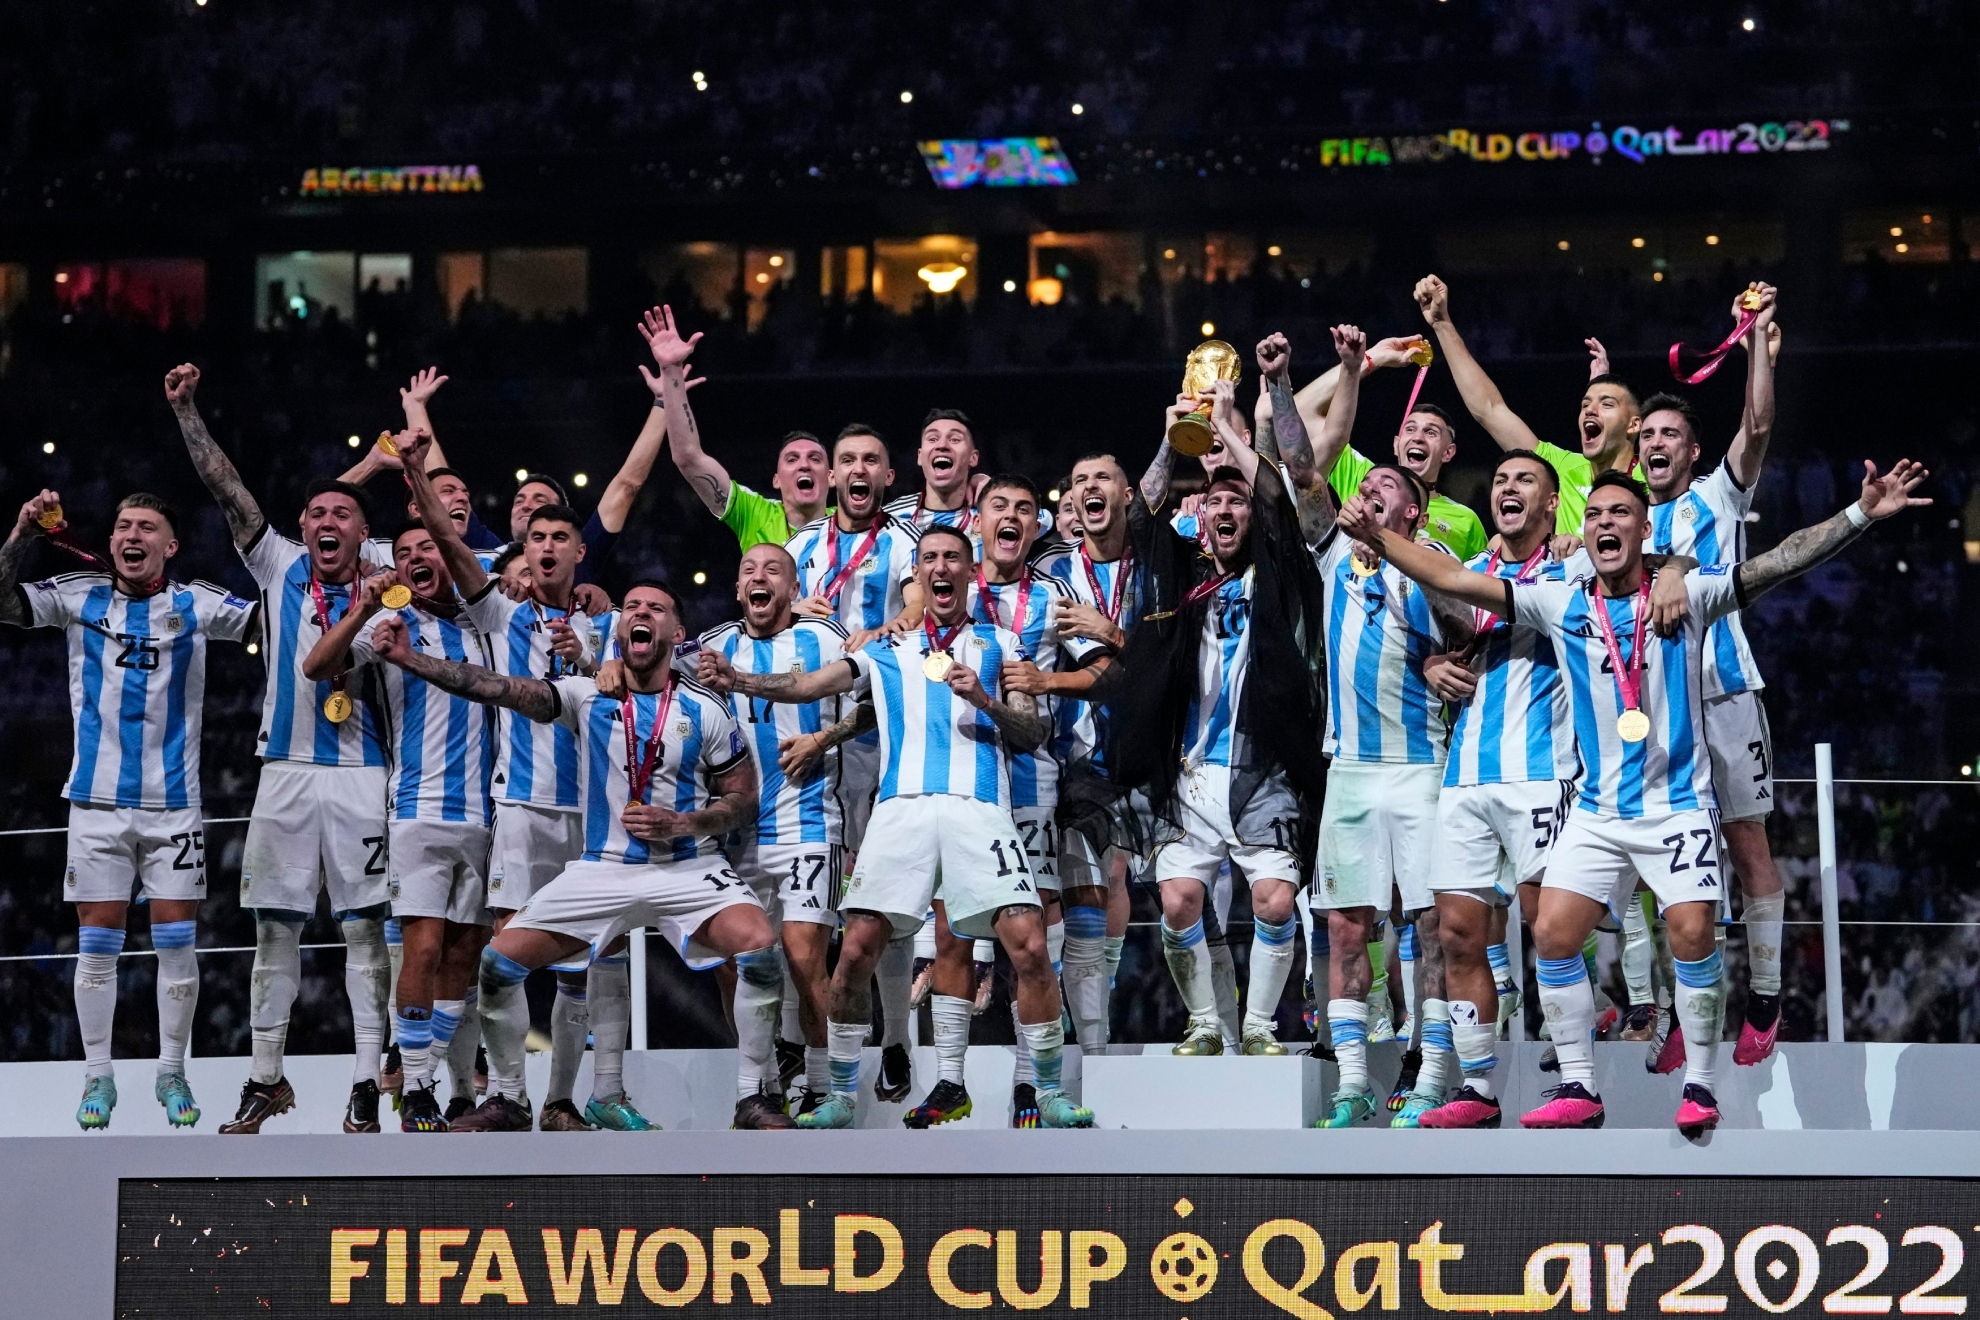 Leo Messi levanta al cielo de Qatar el Mundial ganado por Argentina.